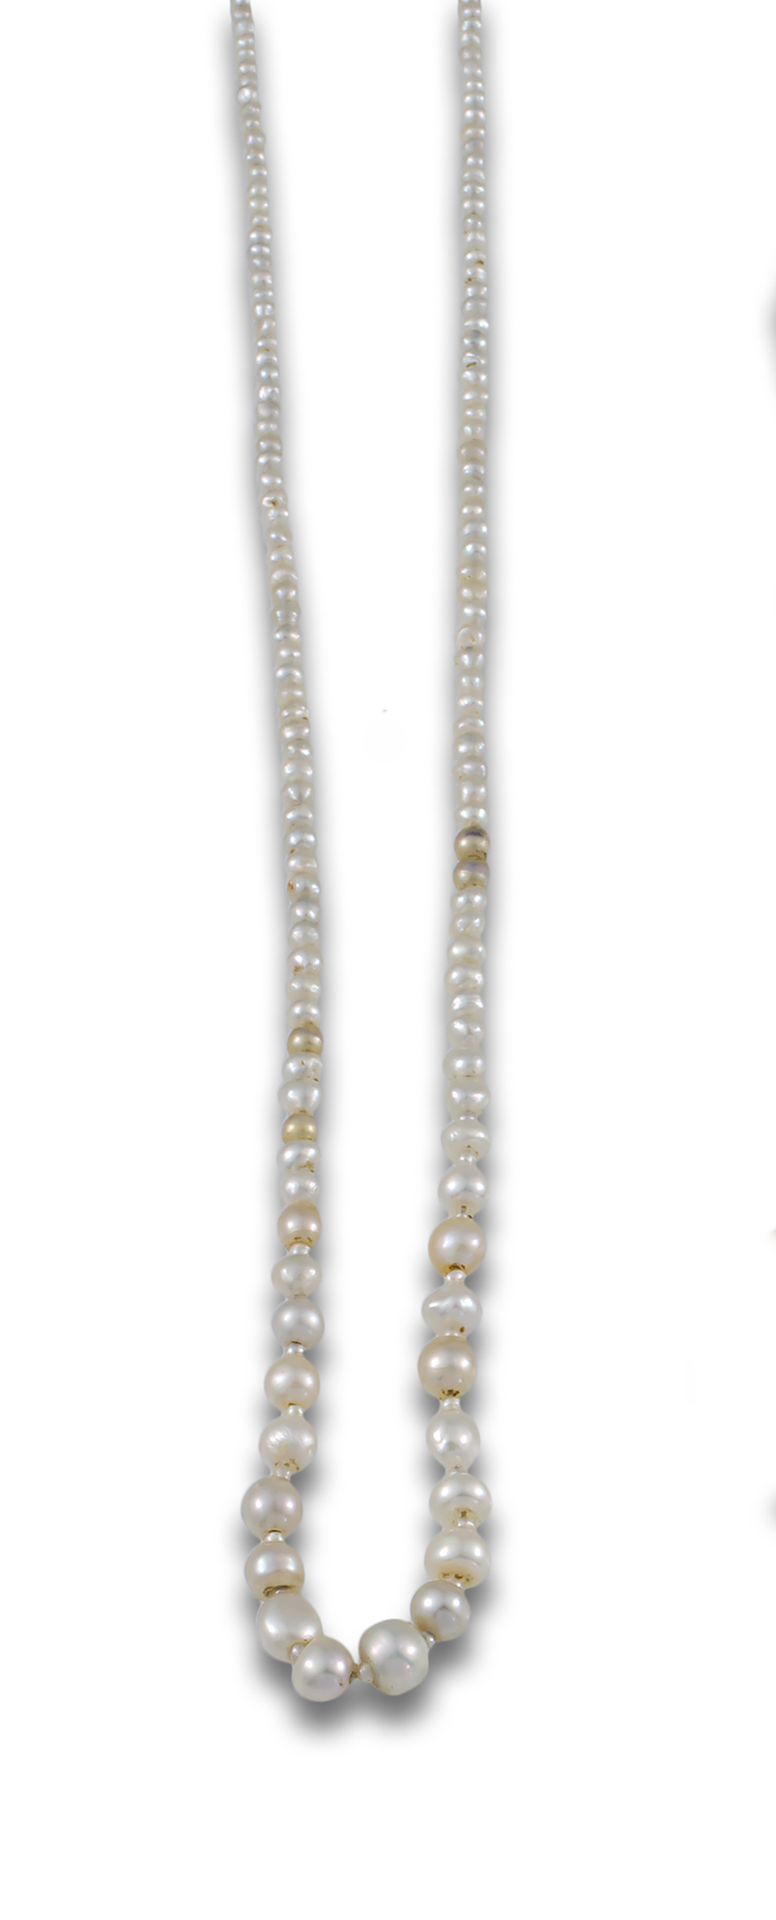 NECKLACE XIX PEARLS GOLD CLASP Collier s. 19e s. Avec perles de culture décroiss&hellip;